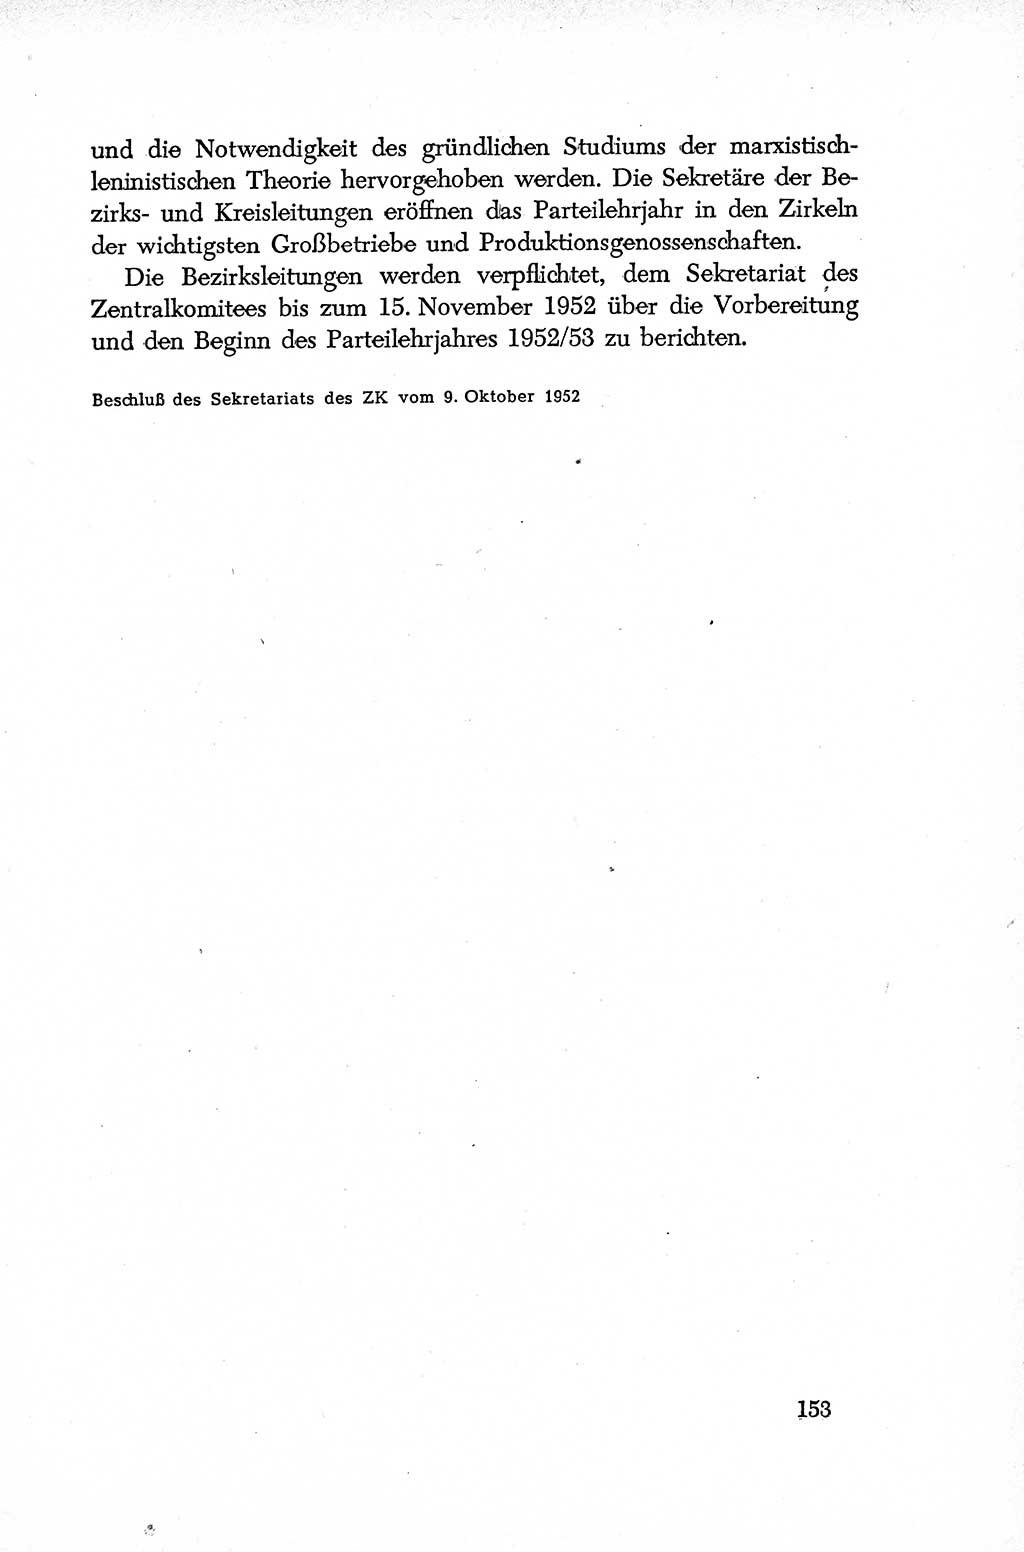 Dokumente der Sozialistischen Einheitspartei Deutschlands (SED) [Deutsche Demokratische Republik (DDR)] 1952-1953, Seite 153 (Dok. SED DDR 1952-1953, S. 153)